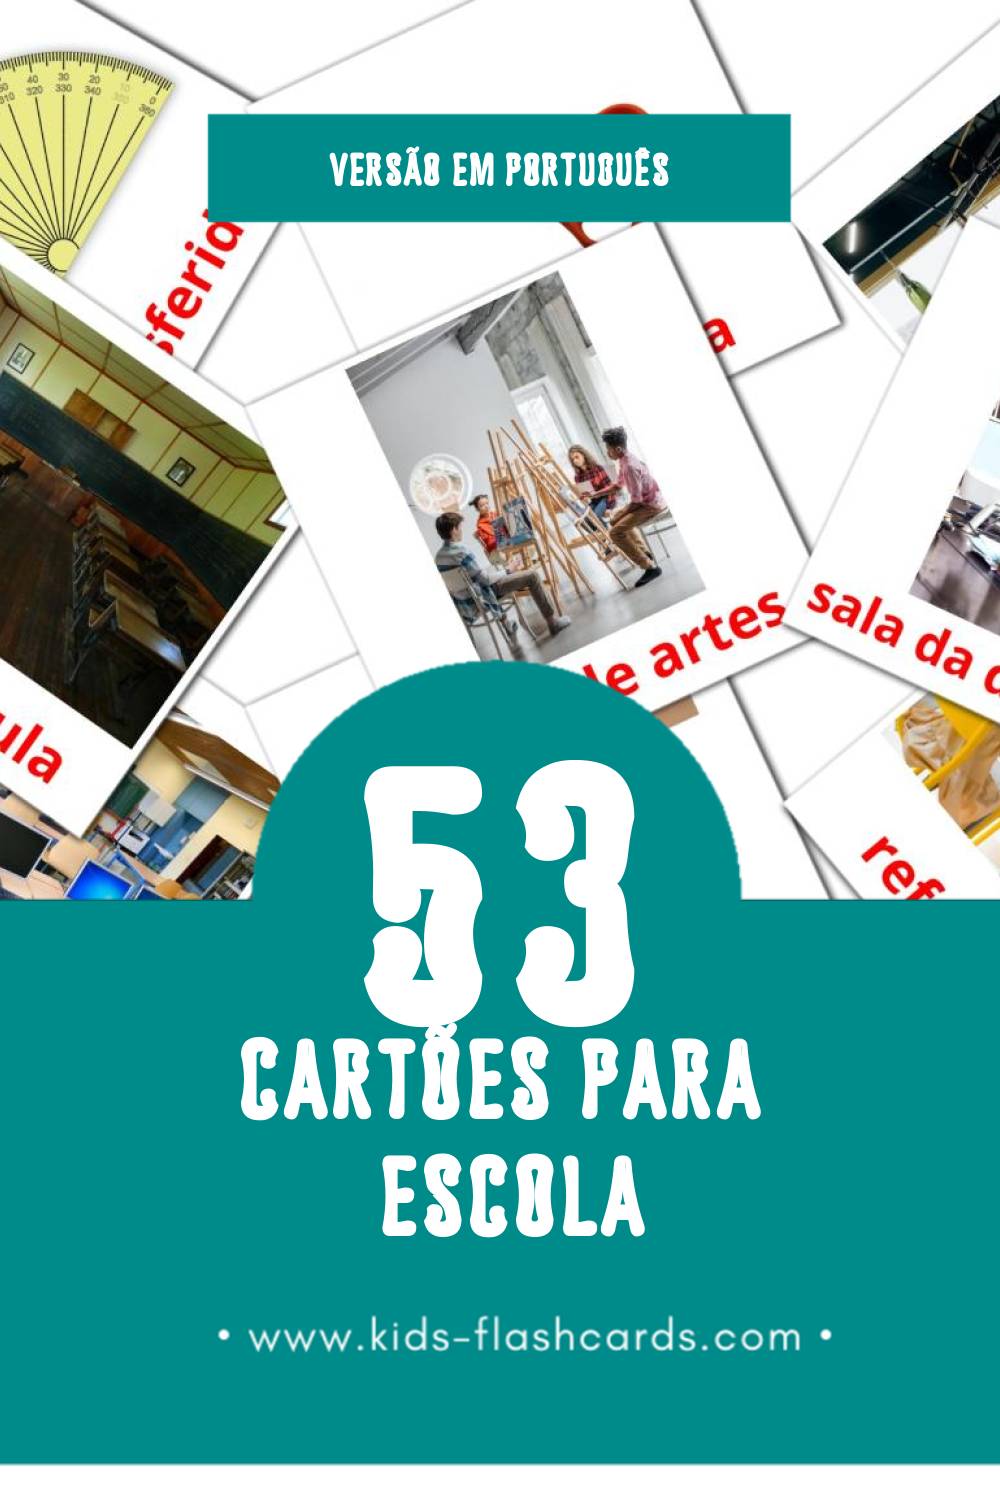 Flashcards de Escola Visuais para Toddlers (53 cartões em Português)